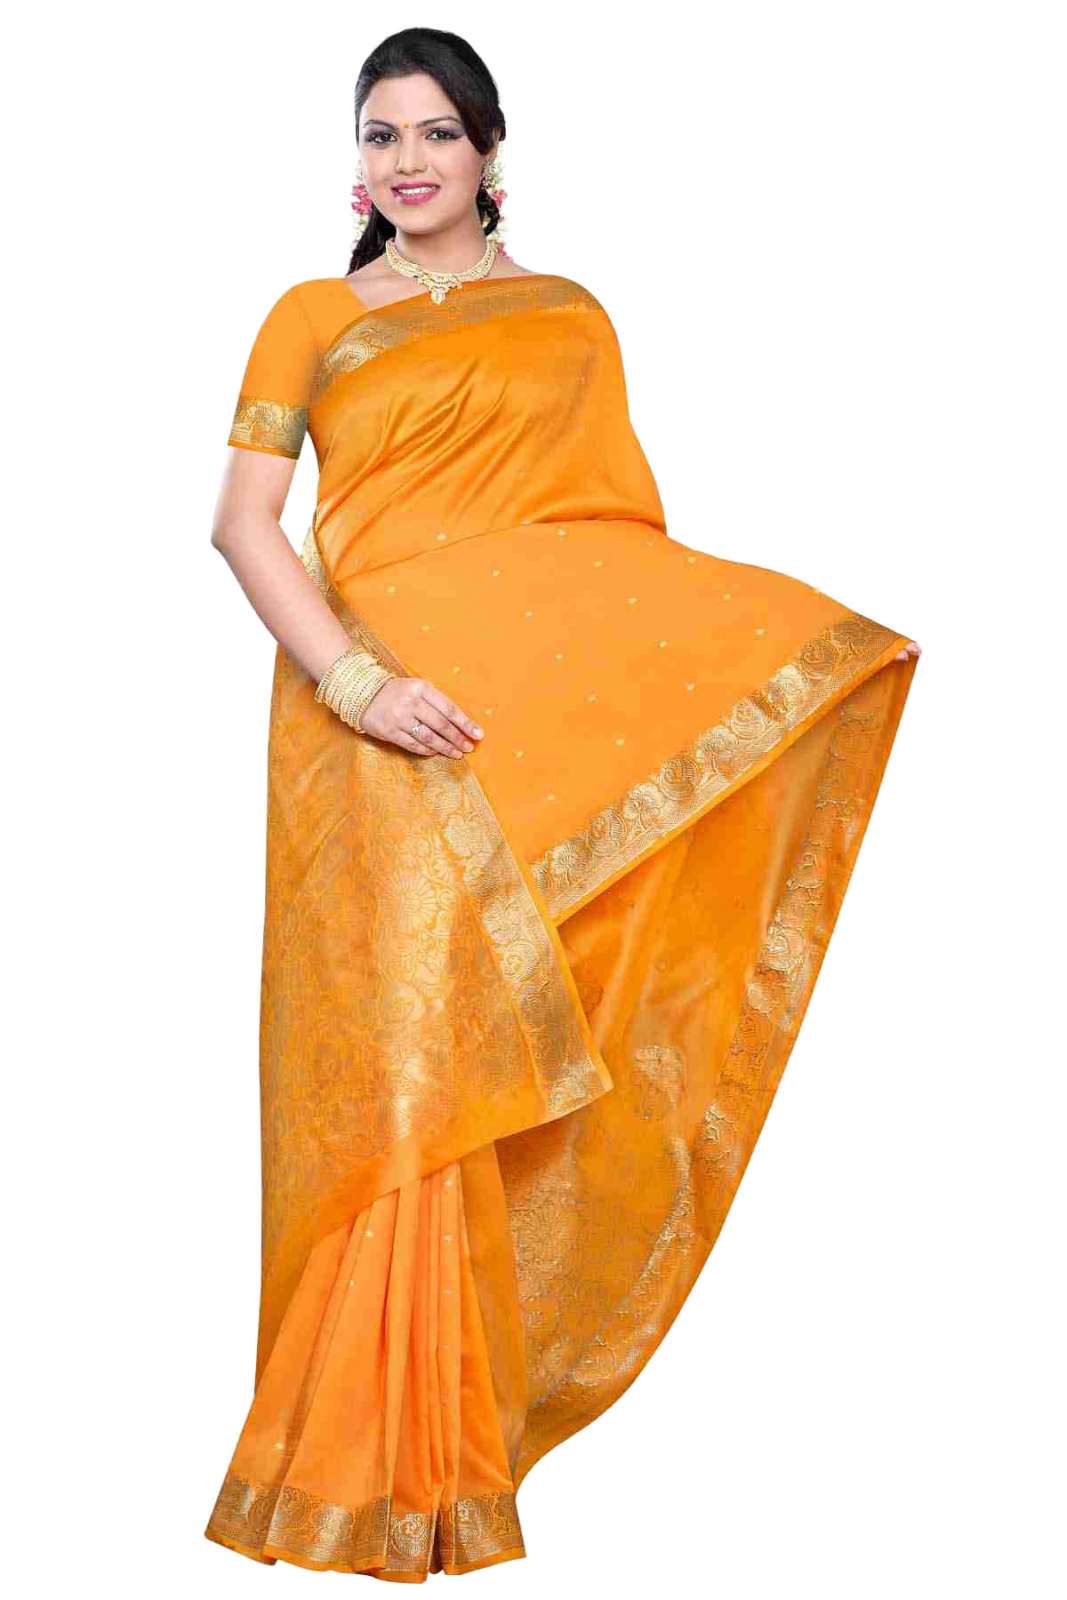 Indian Selections Pumpkin -  Benares Art Silk Sari / Saree/Bellydance Fabric (India)